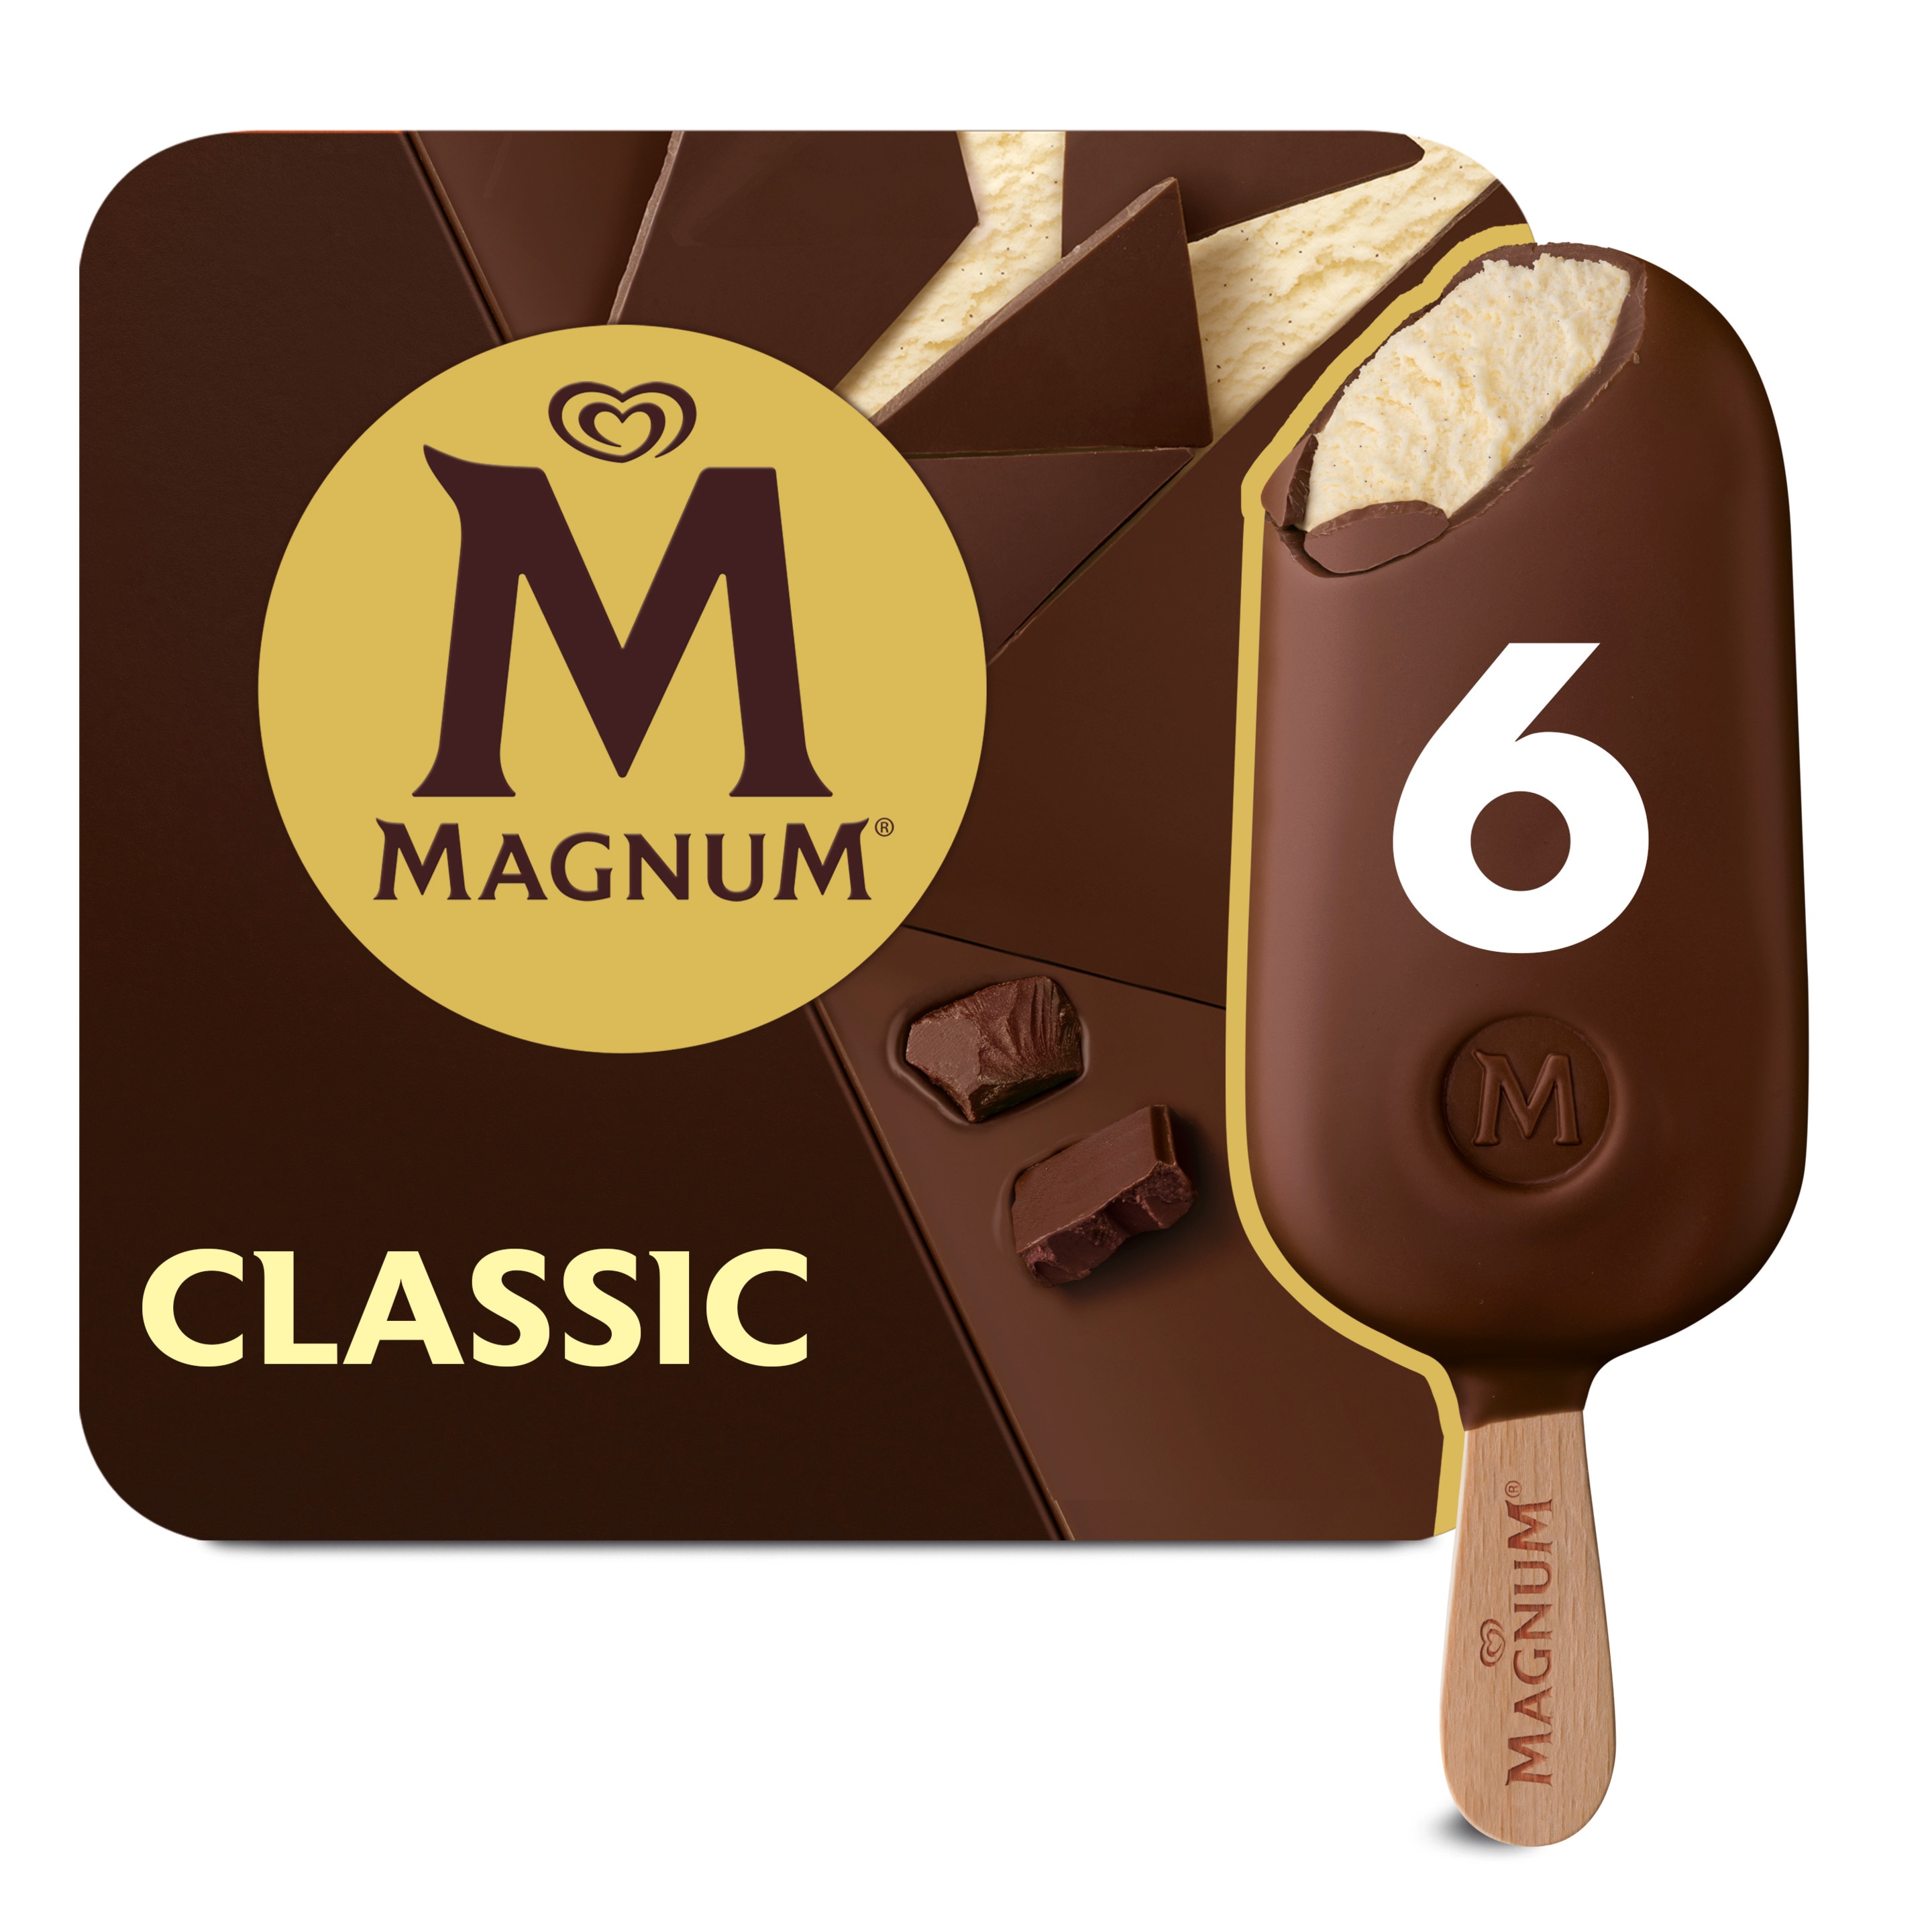 Magnum Classic 6 x 100 ml - Magnum Schweiz